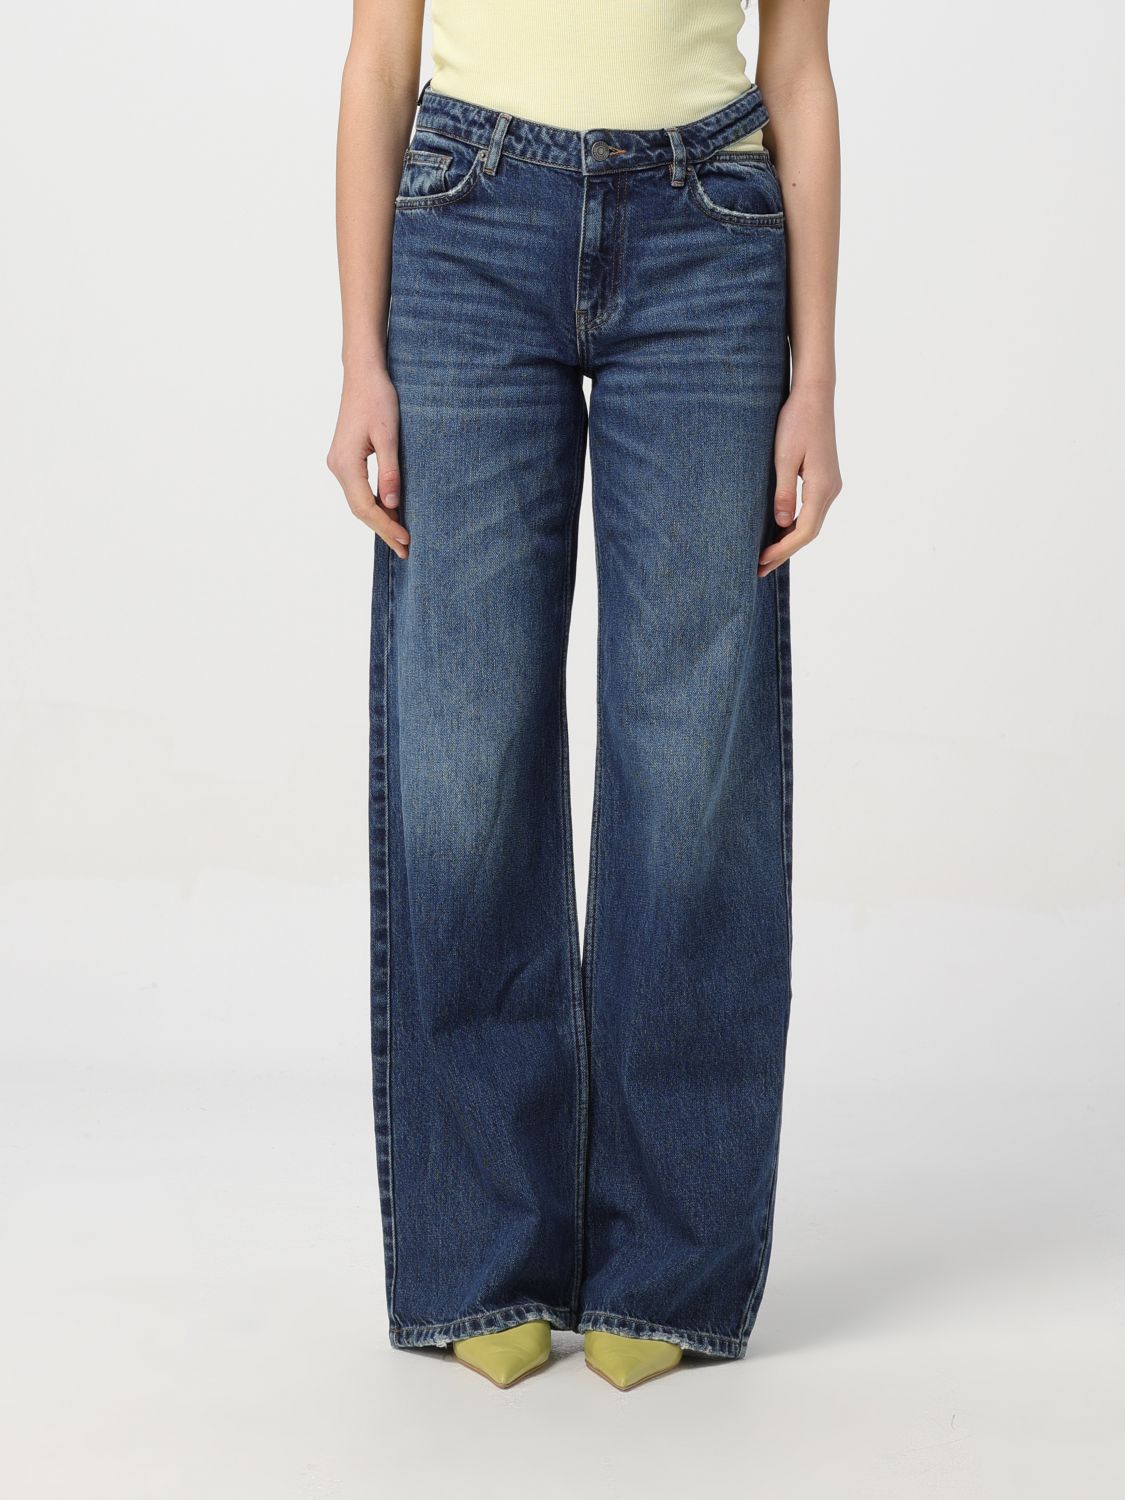 Actitude Twinset Jeans ACTITUDE TWINSET Woman colour Denim